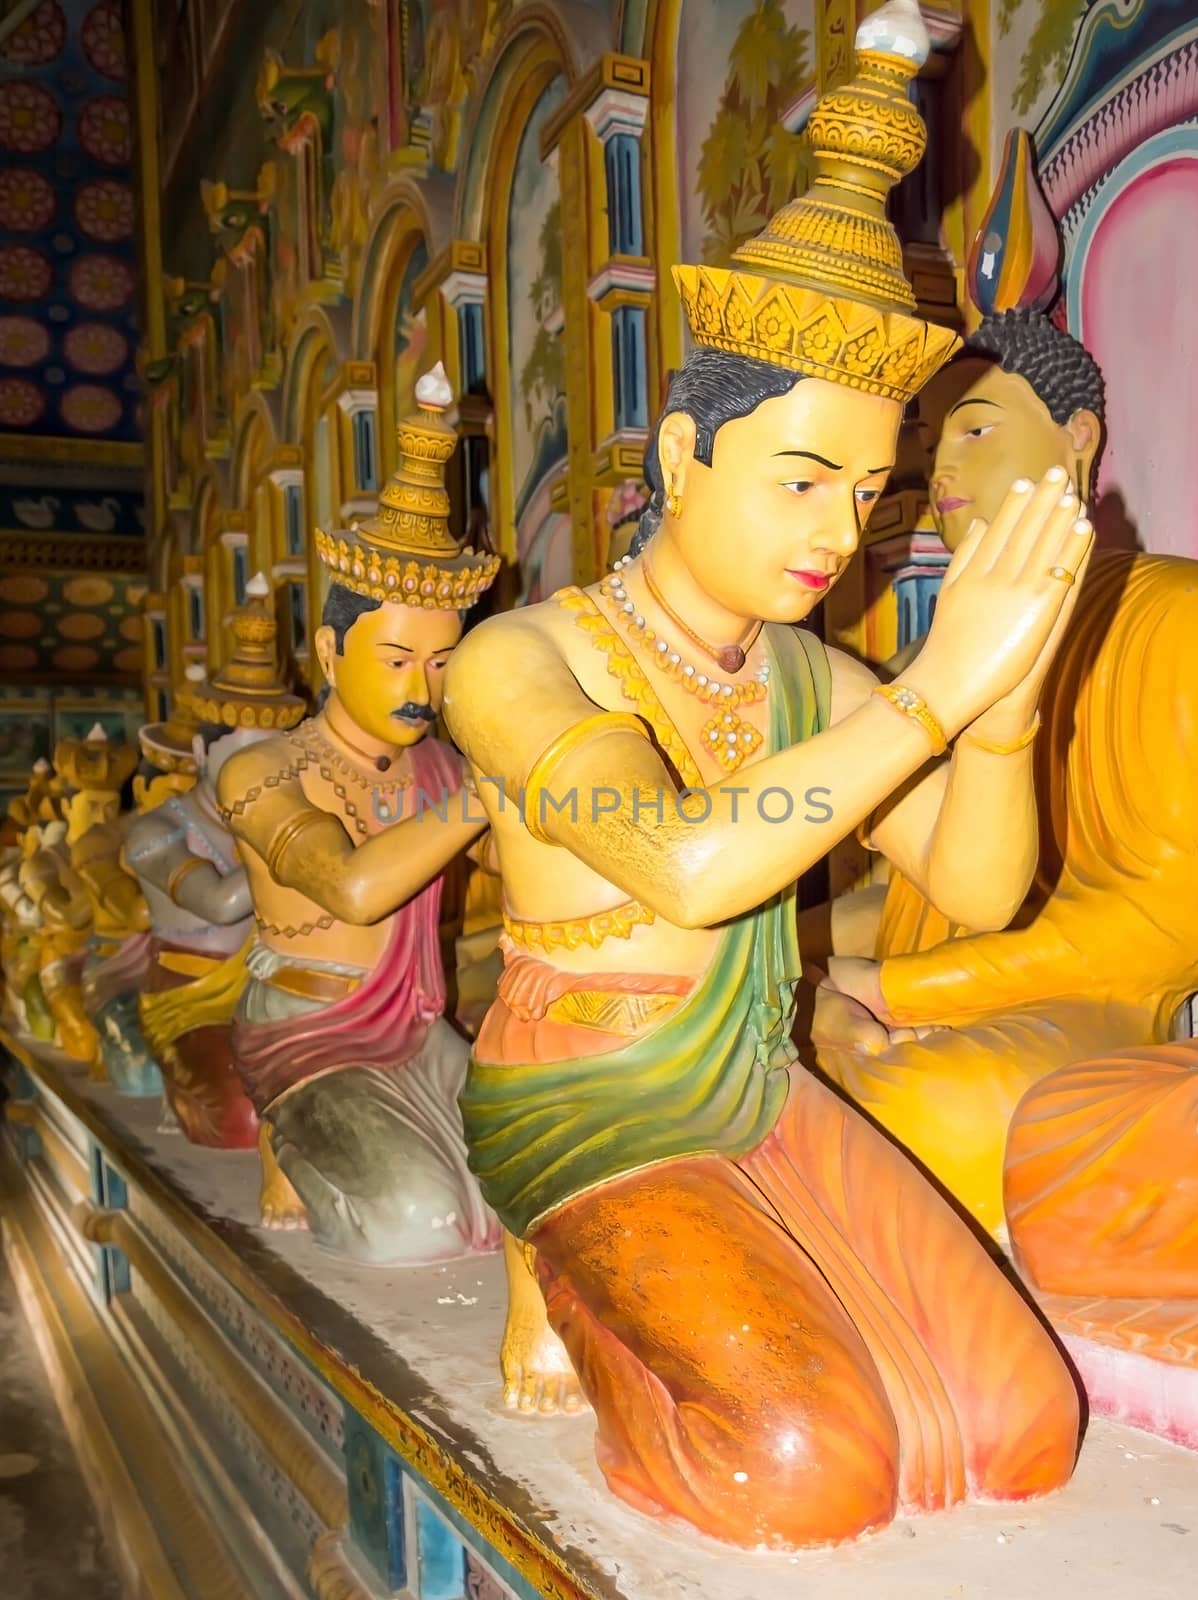 The twenty-eight Buddhas by ArtesiaWells